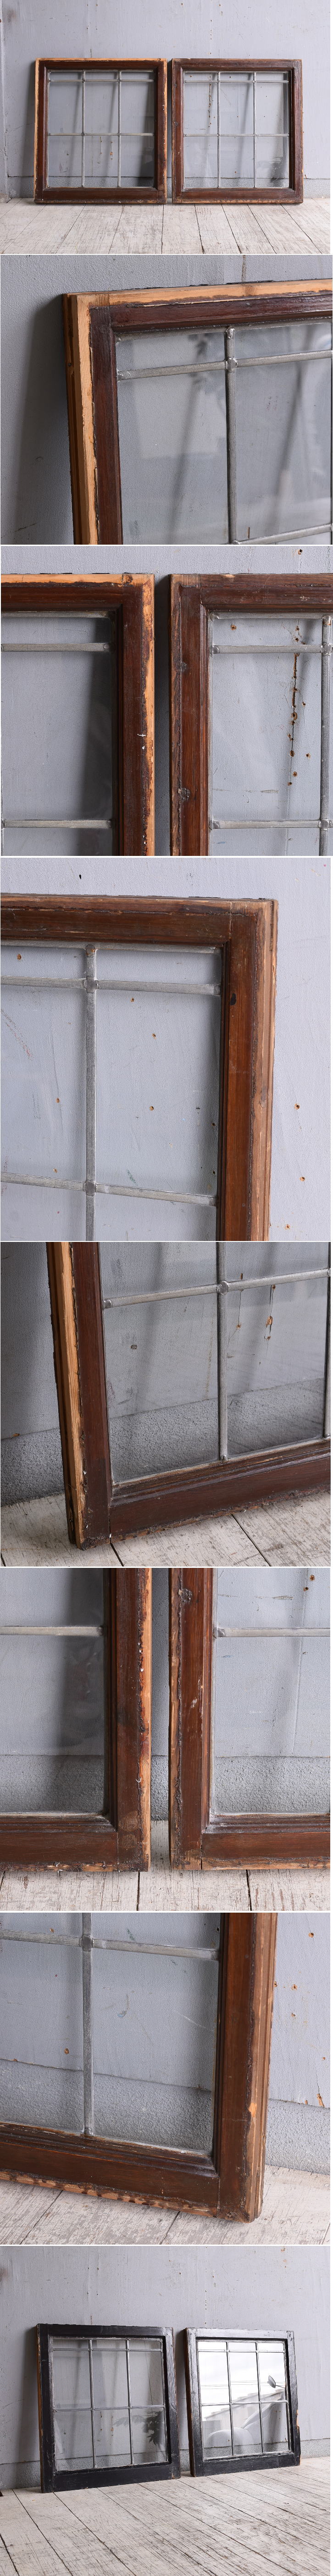 イギリス アンティーク 窓×2 無色透明 9953